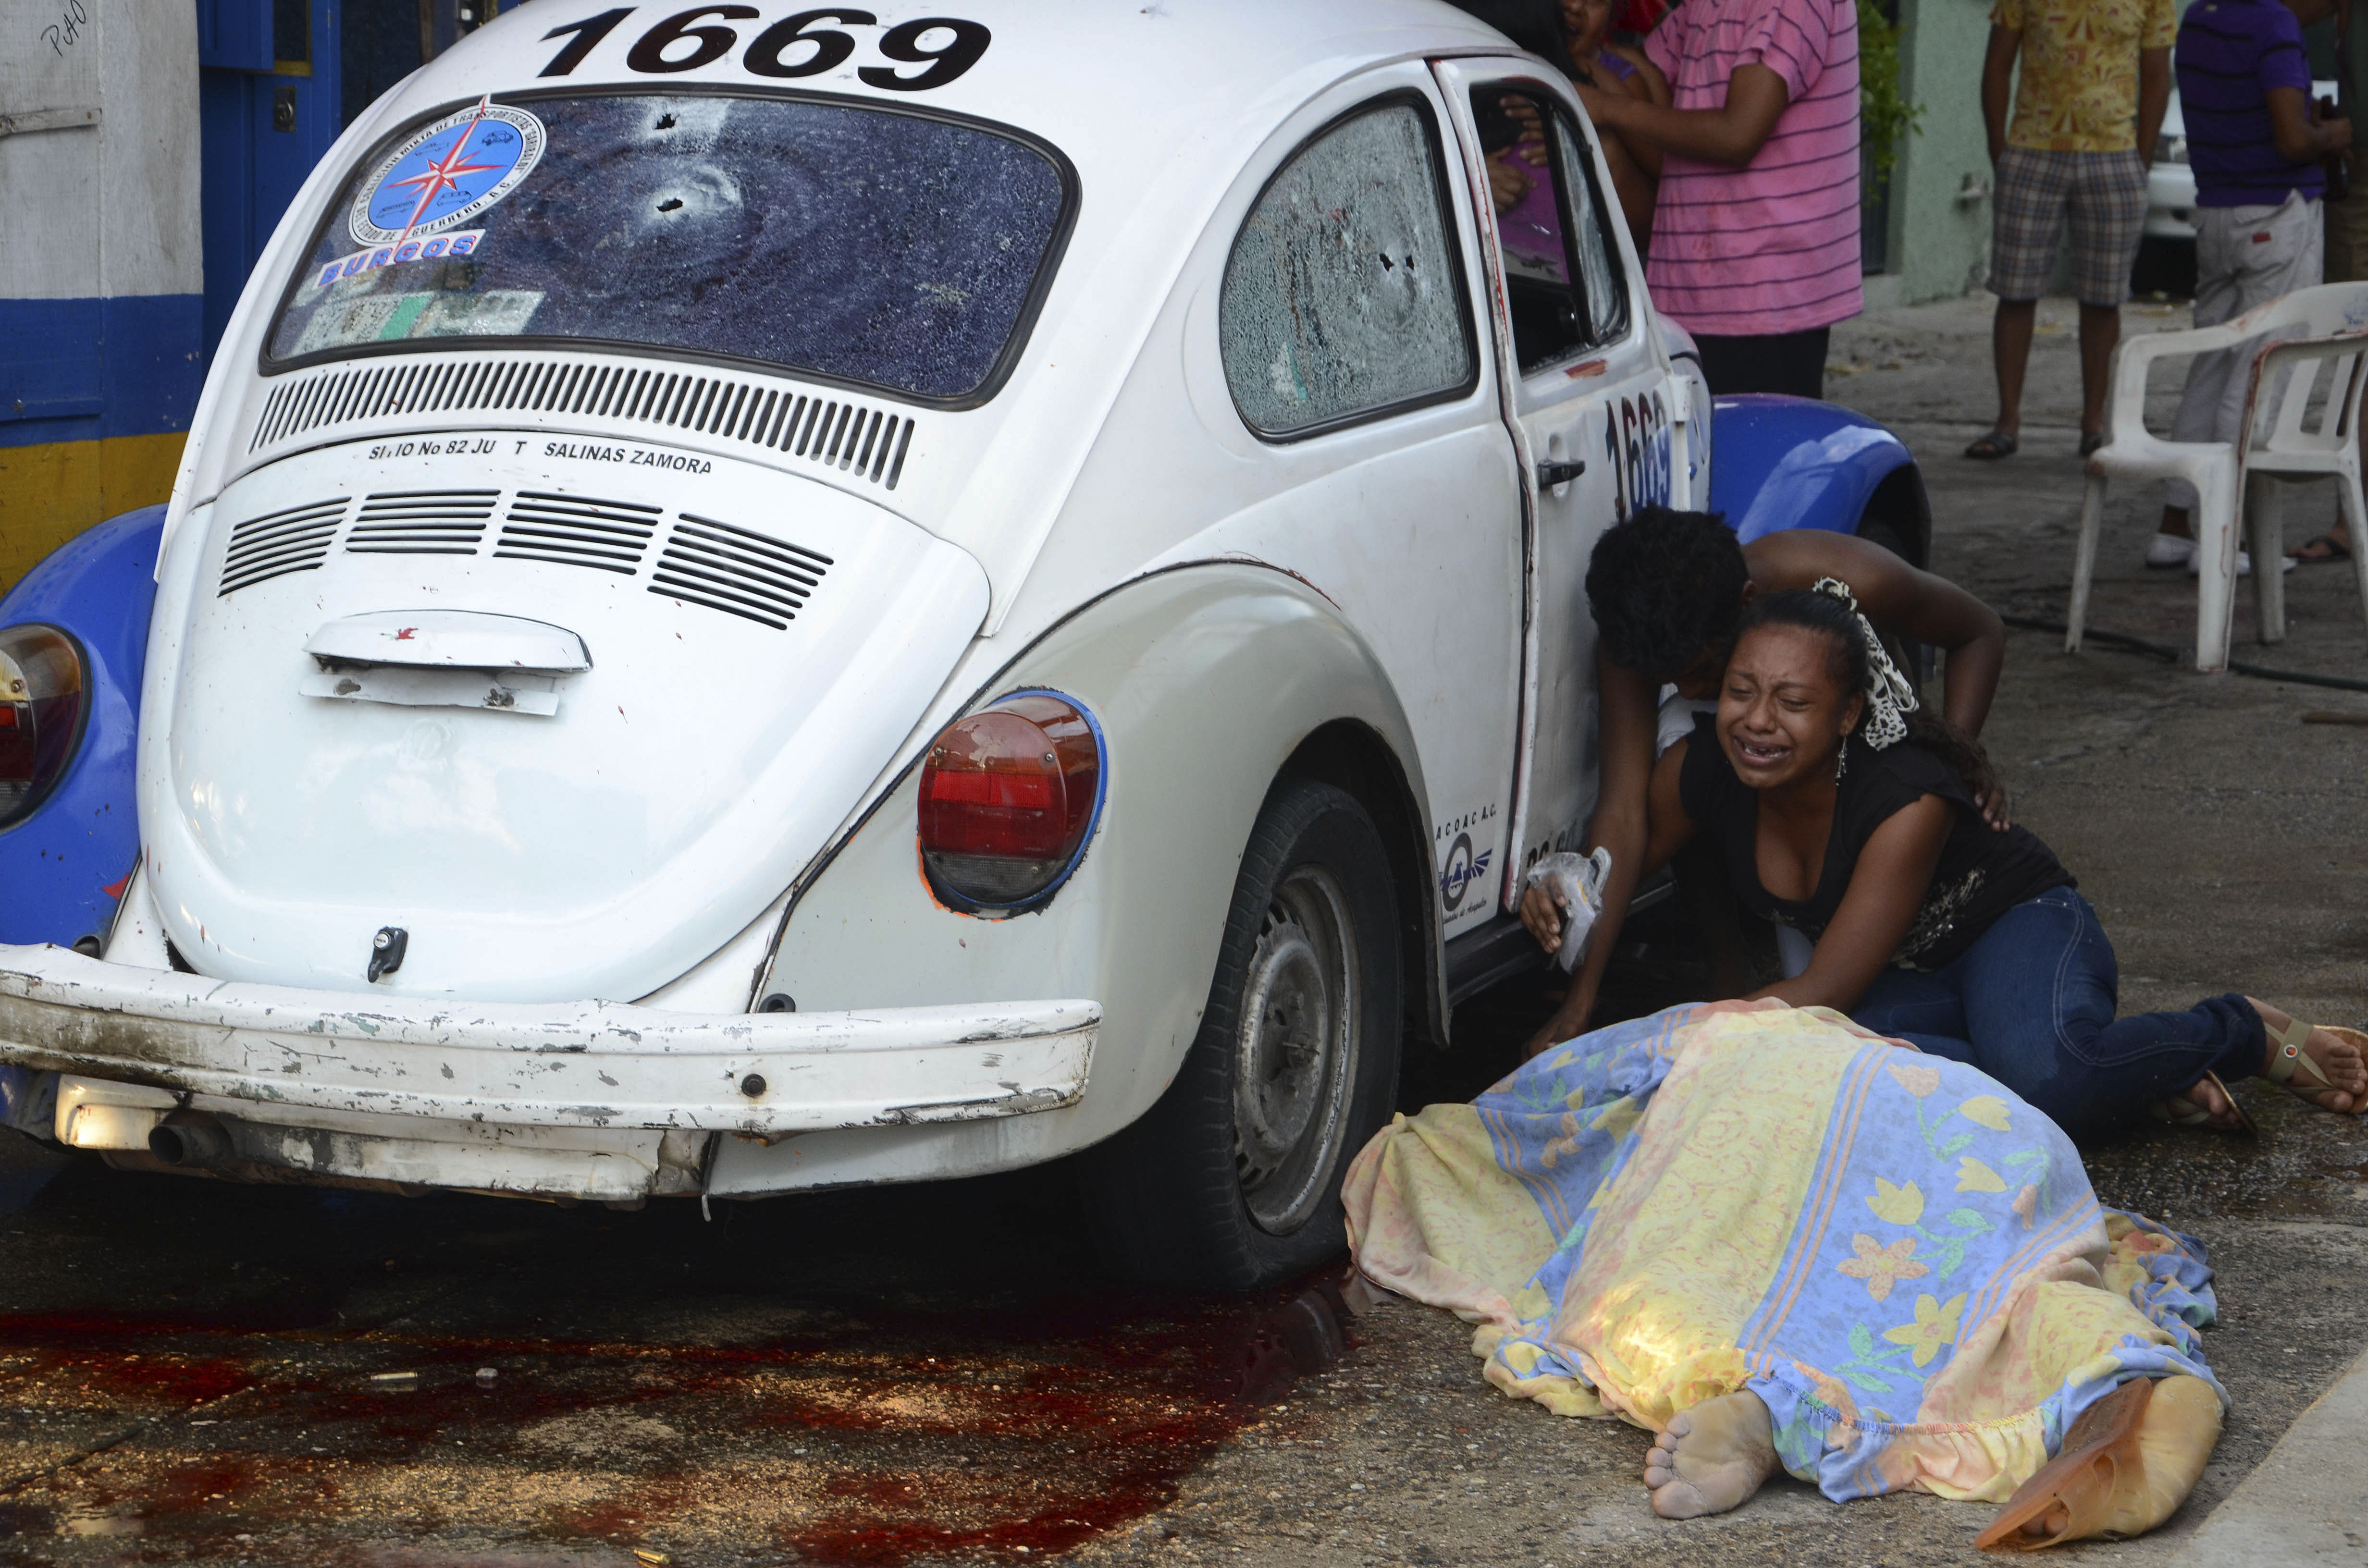 Anhöriga sörjer efter att beväpnade män börjat skjuta mot en taxi och dödat föraren och passageraren.